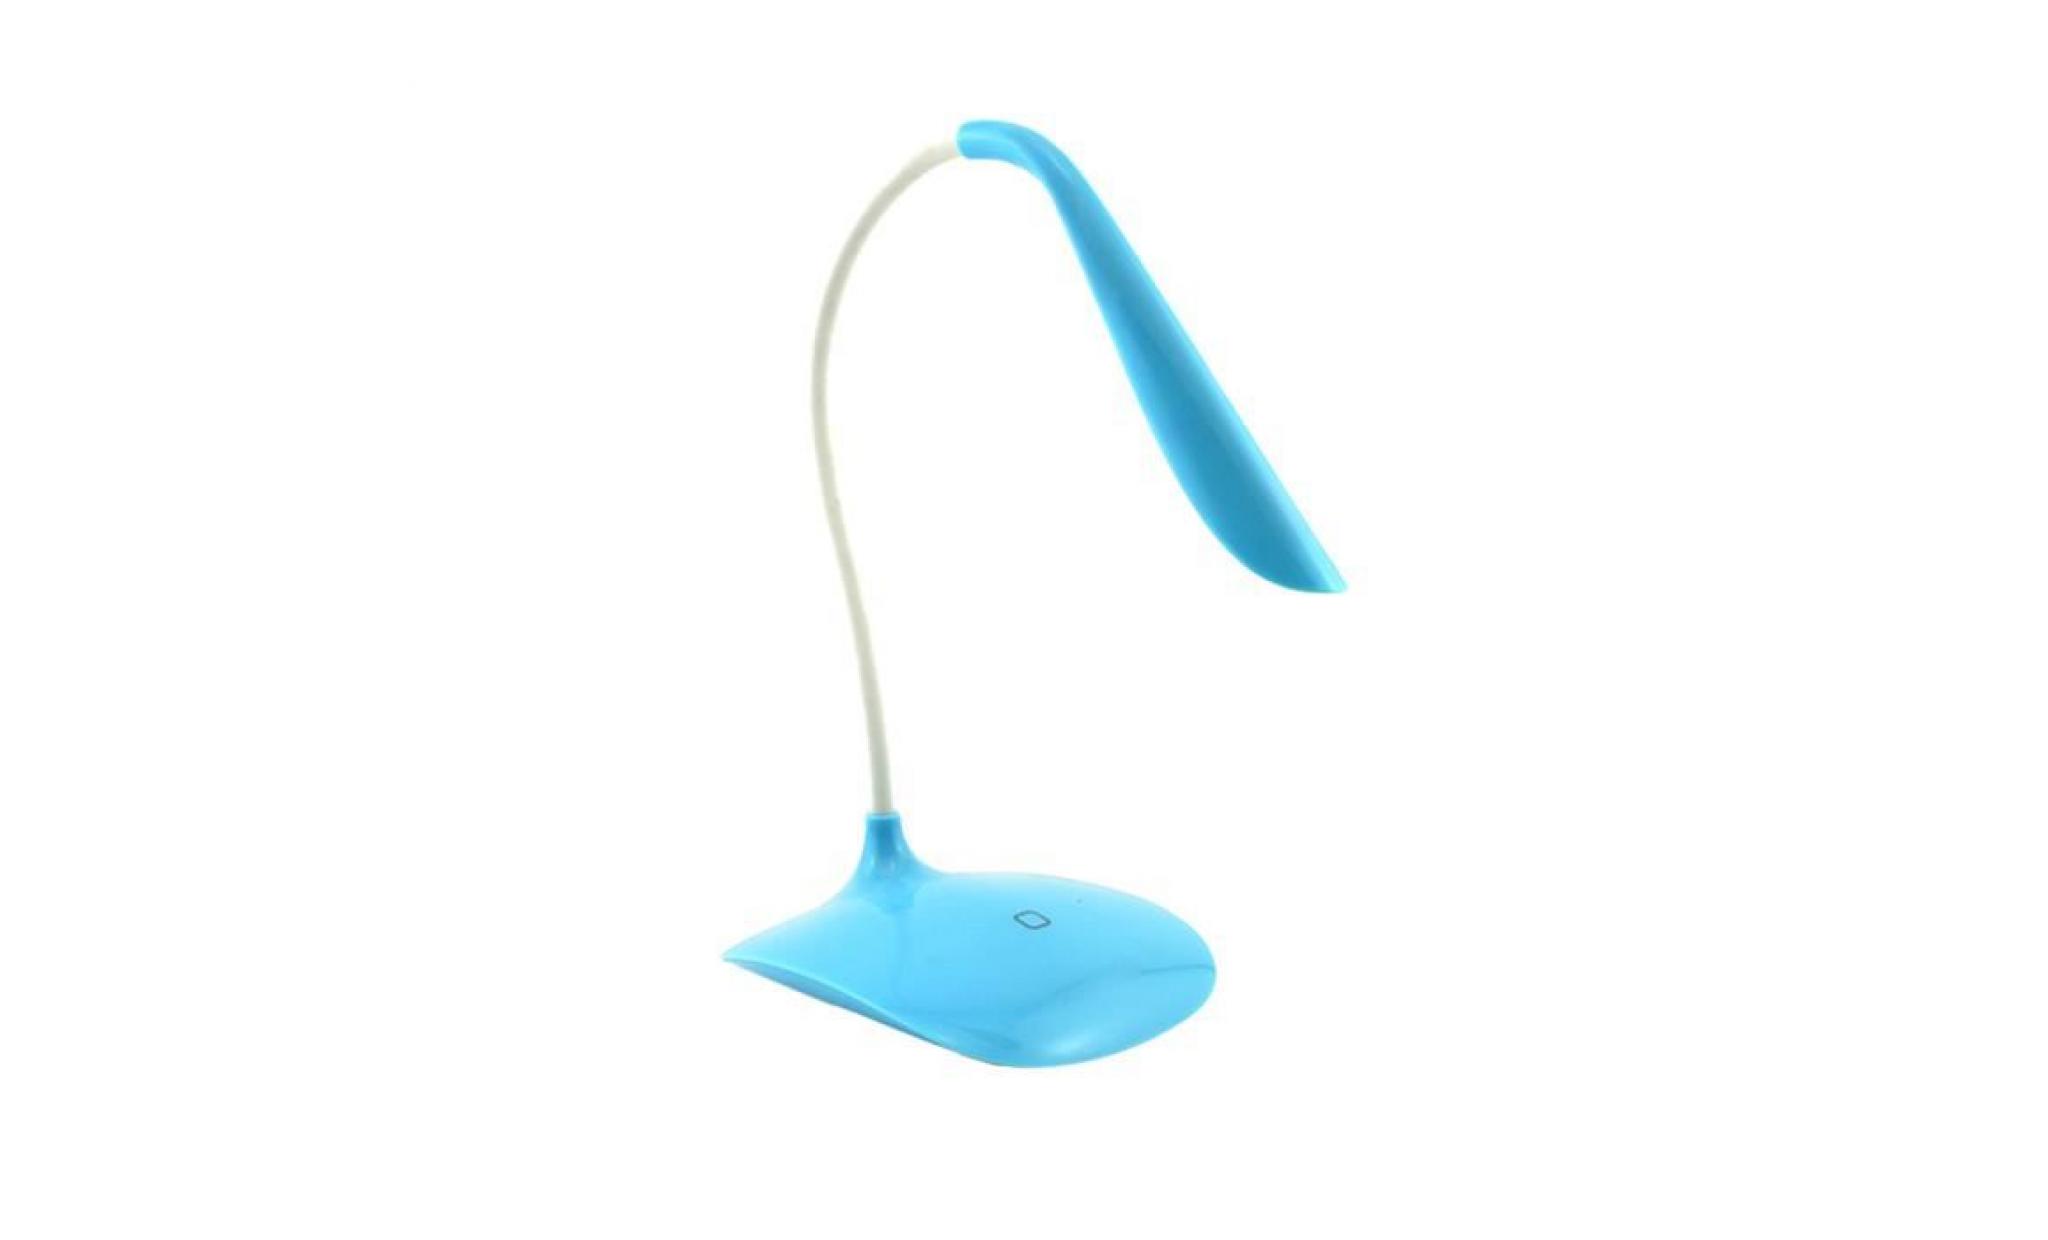 réglable de toucher du capteur usb rechargeable lampe de bureau led lampe de travail de lecture bleu ciel@am1x193 skyblue_999 pas cher